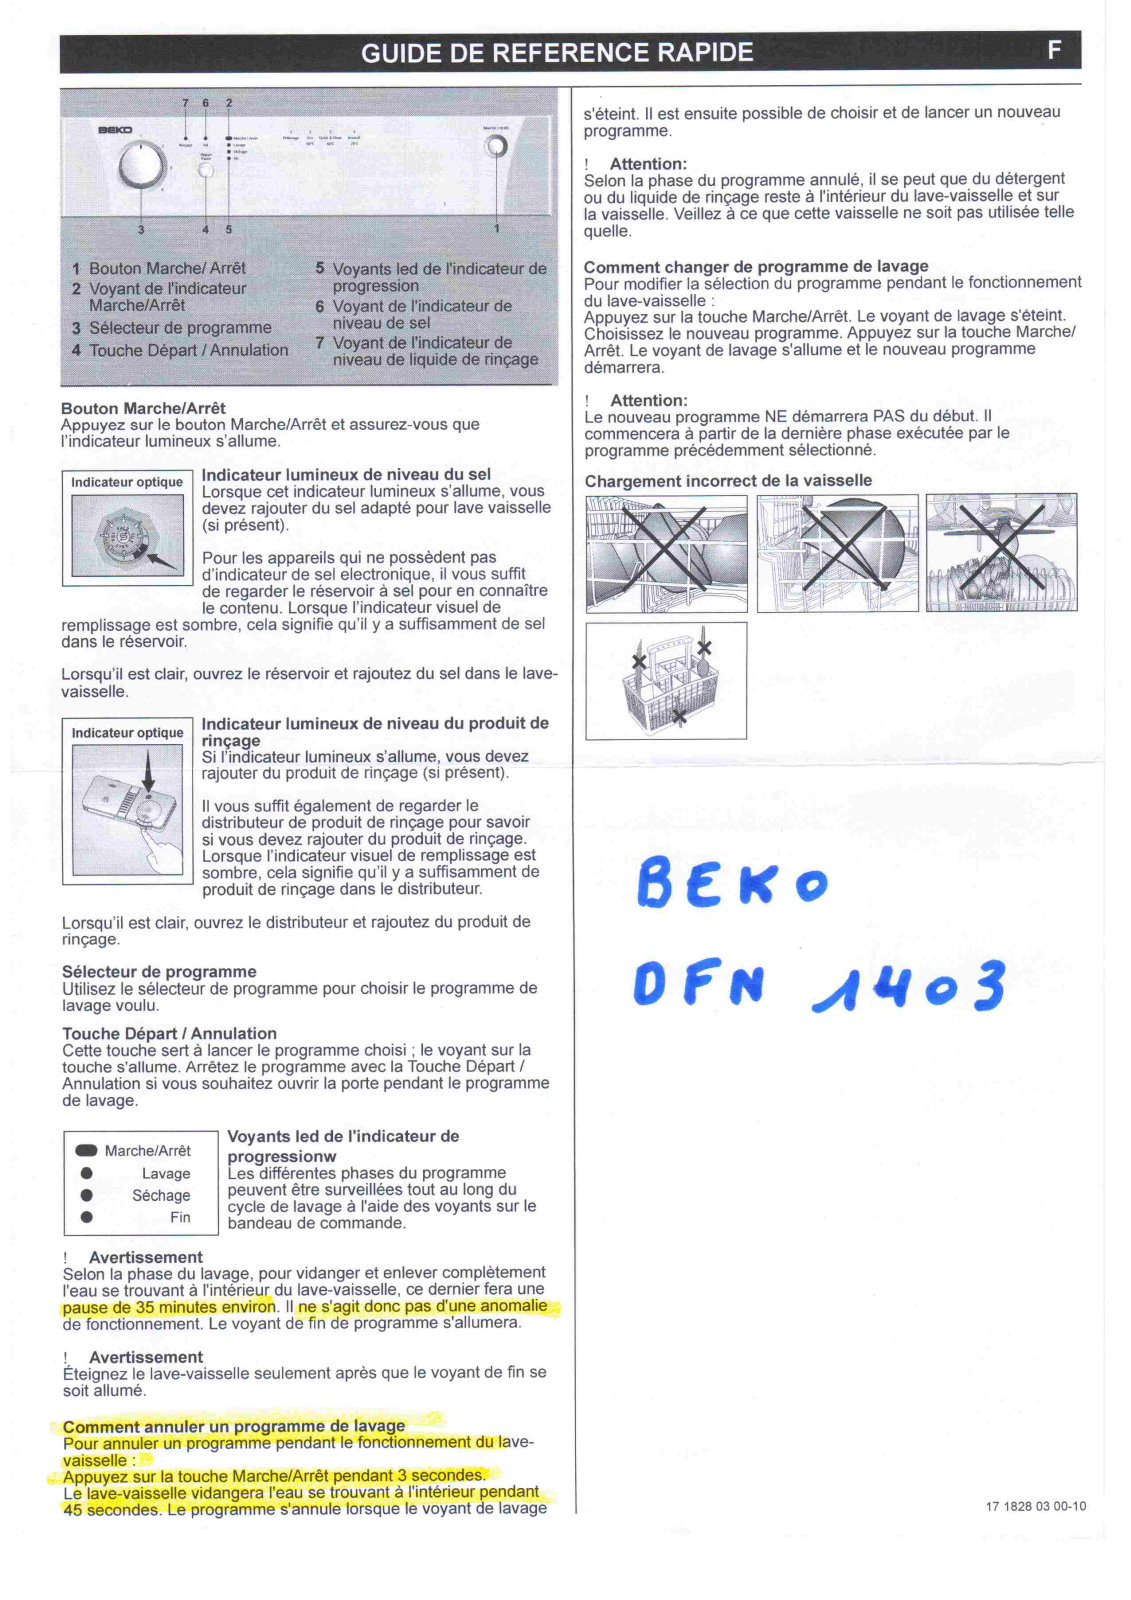 BEKO DFN1403S User Manual